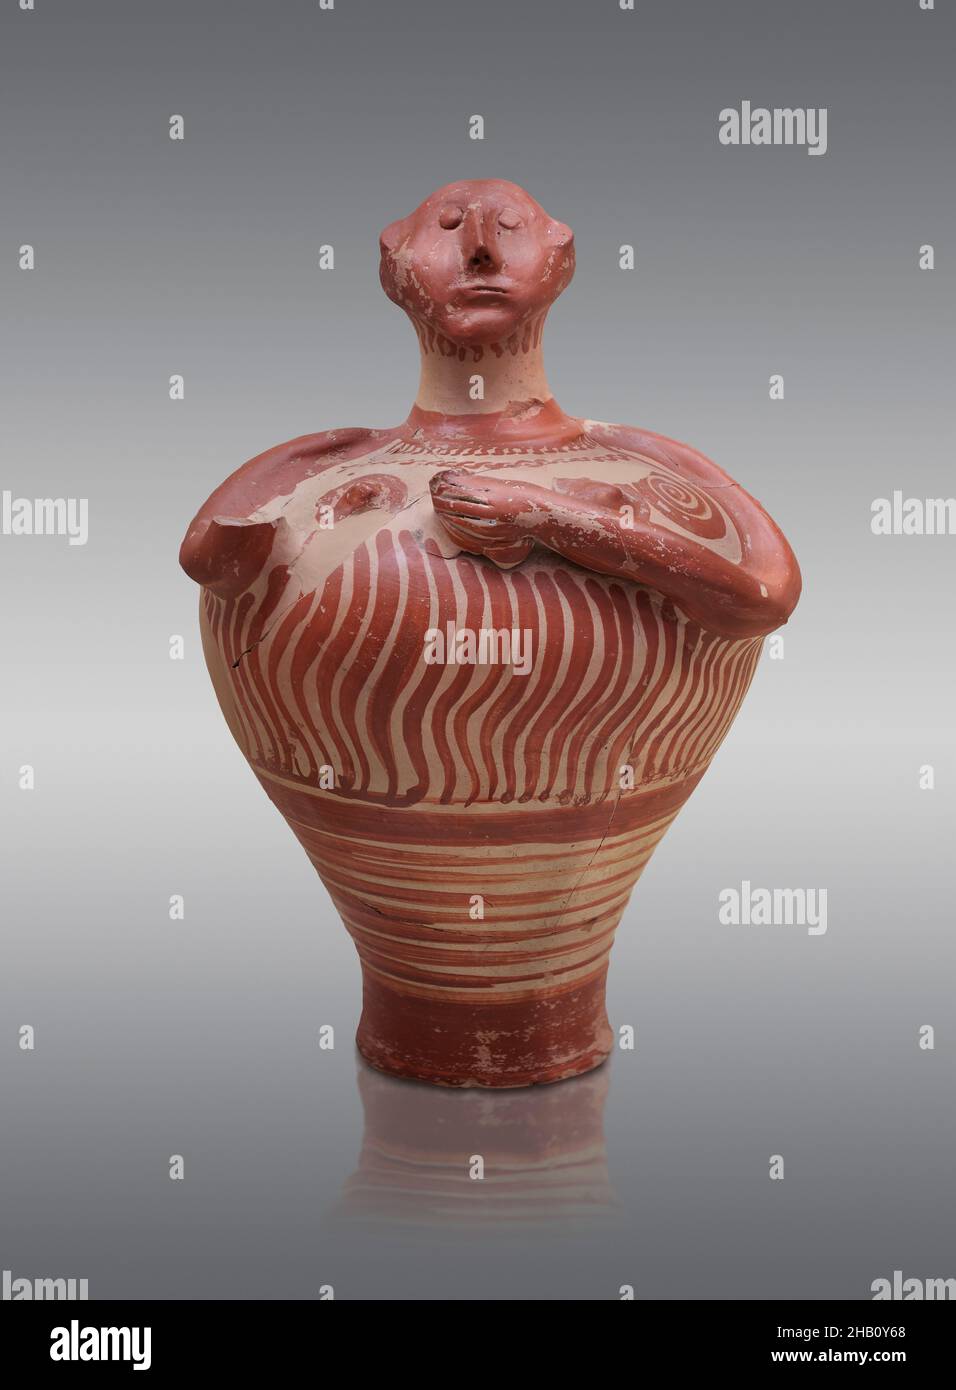 Mykenische anthropomorphe Vase, 1250 - 1180 v. Chr. Mykene-Tempel, Tomm 18, Nische. Mykene archäologische Stätte Museum, Griechenland. Ref. LH IIIB2. Es ist nicht k Stockfoto